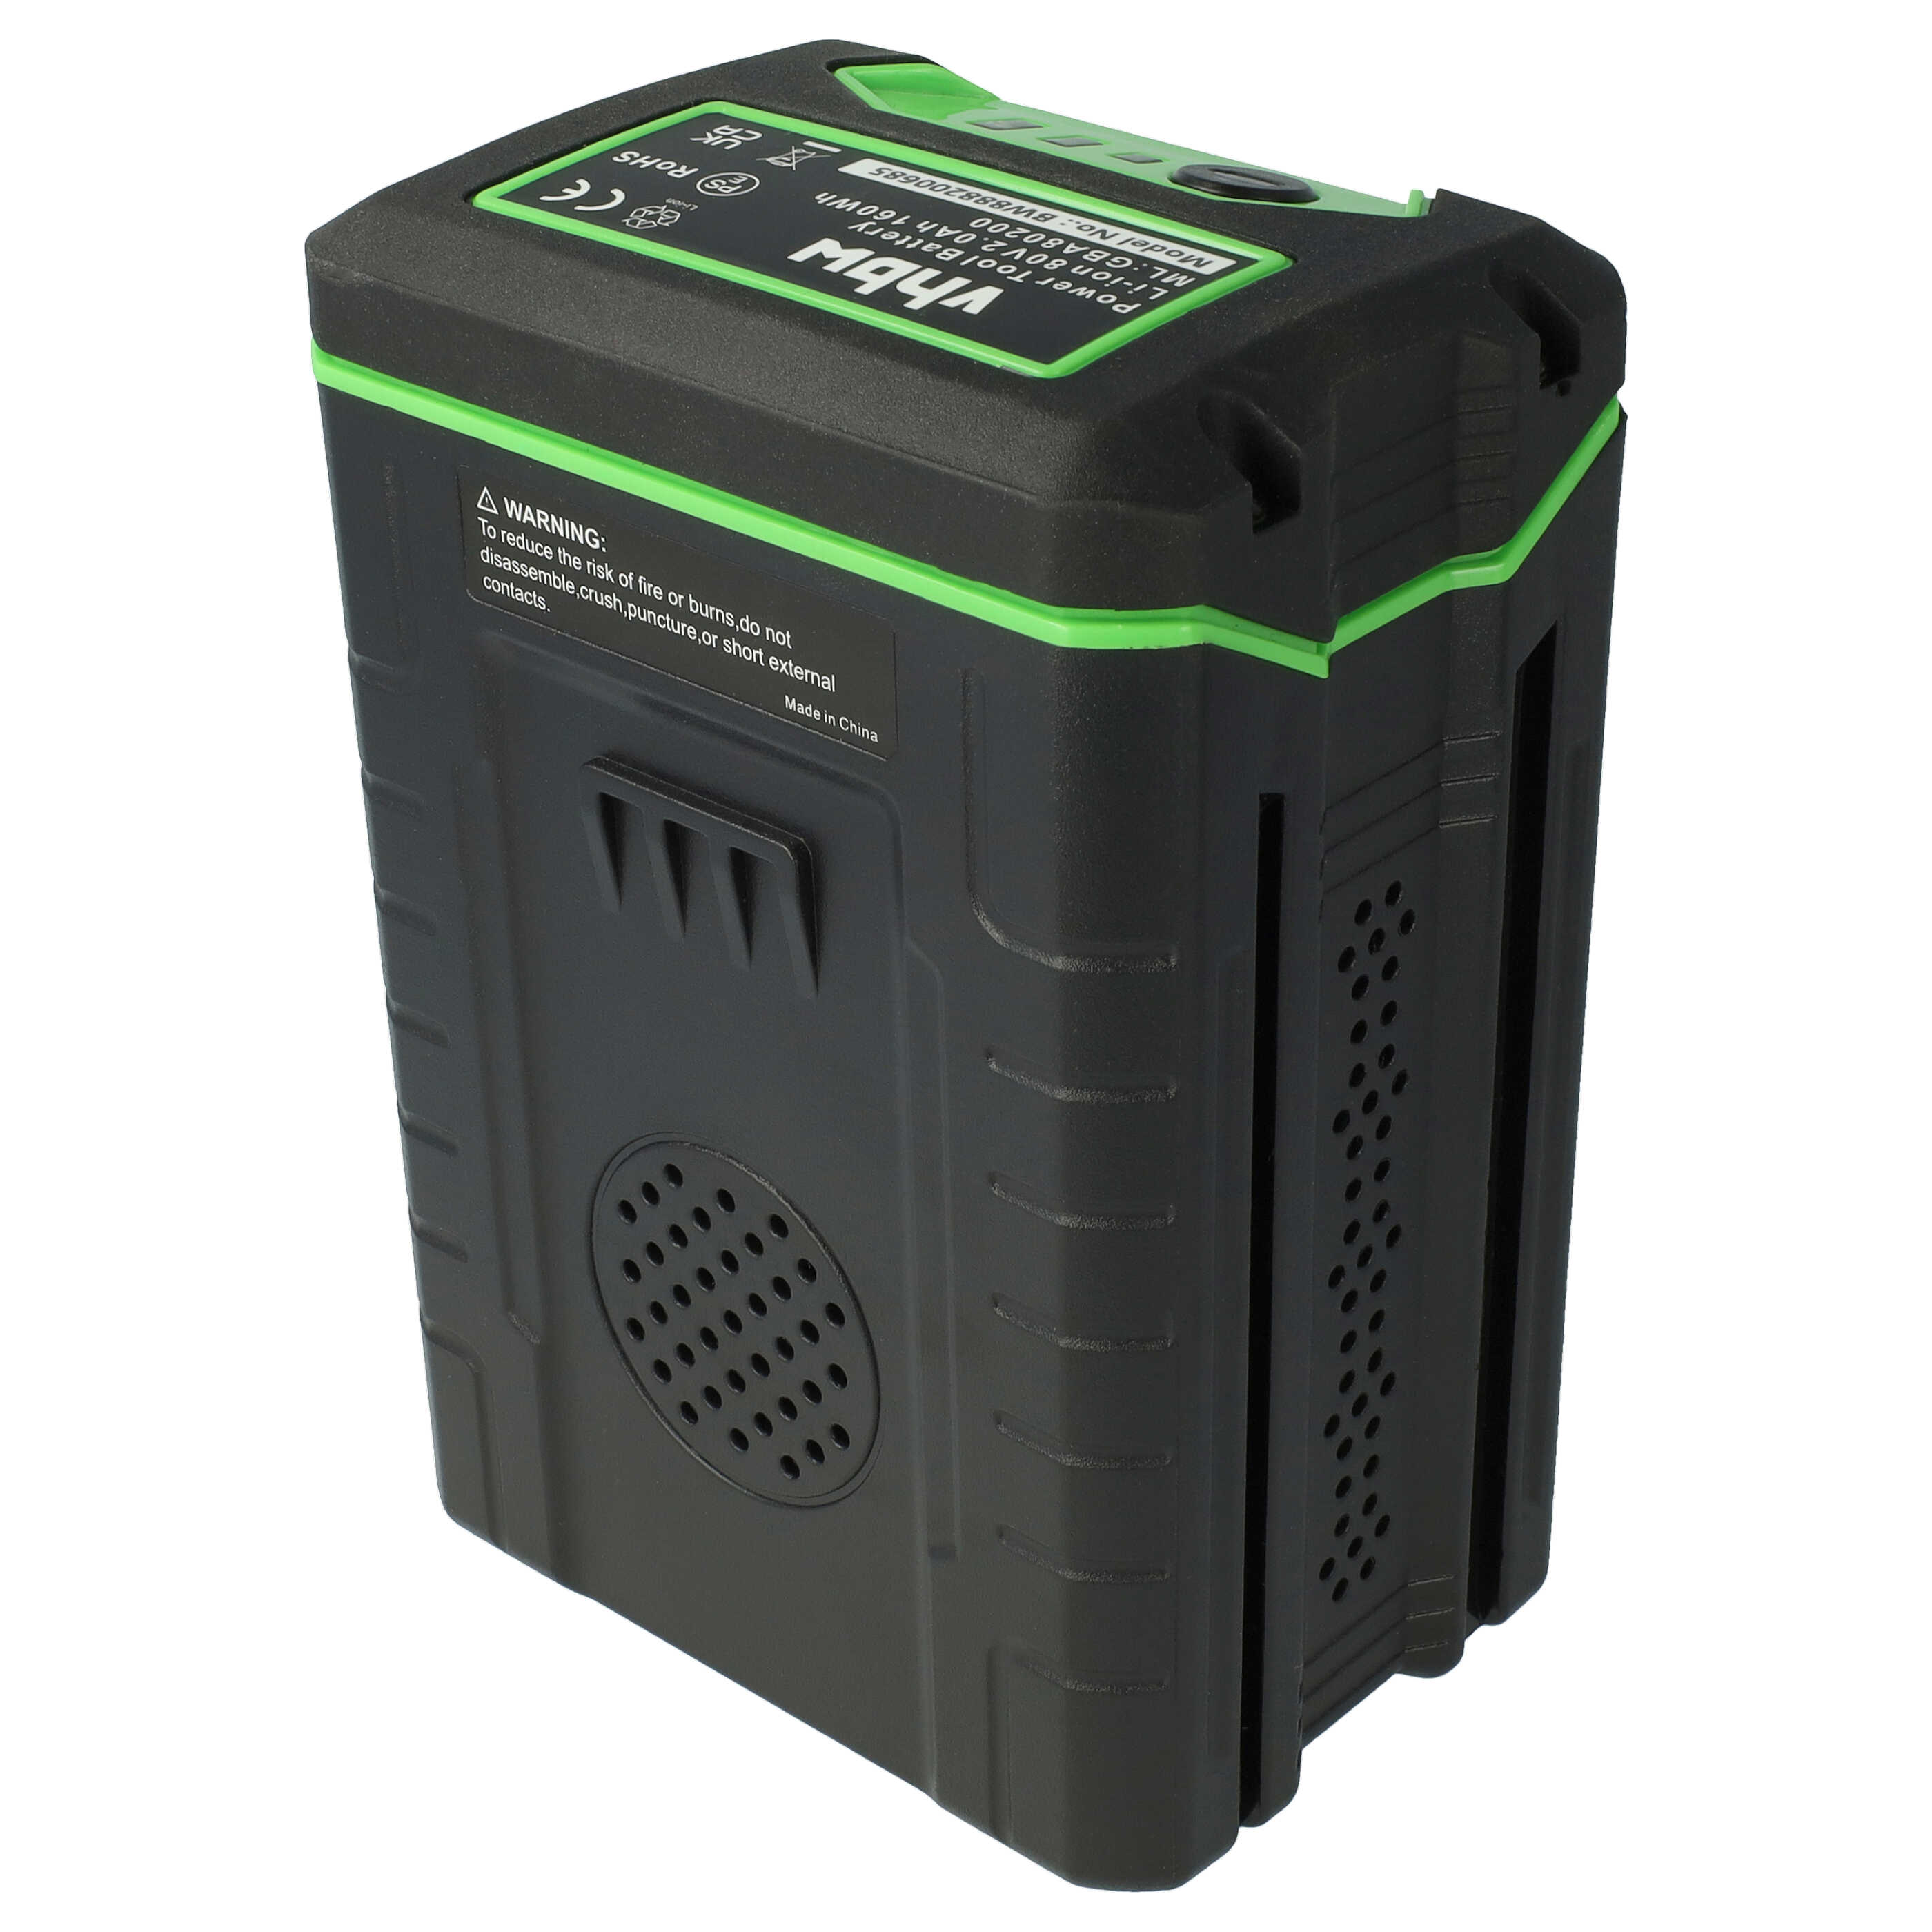 Akumulator do robota koszącego zamiennik Remarc 82V430G - 2500 mAh 80 V Li-Ion, czarny / zielony